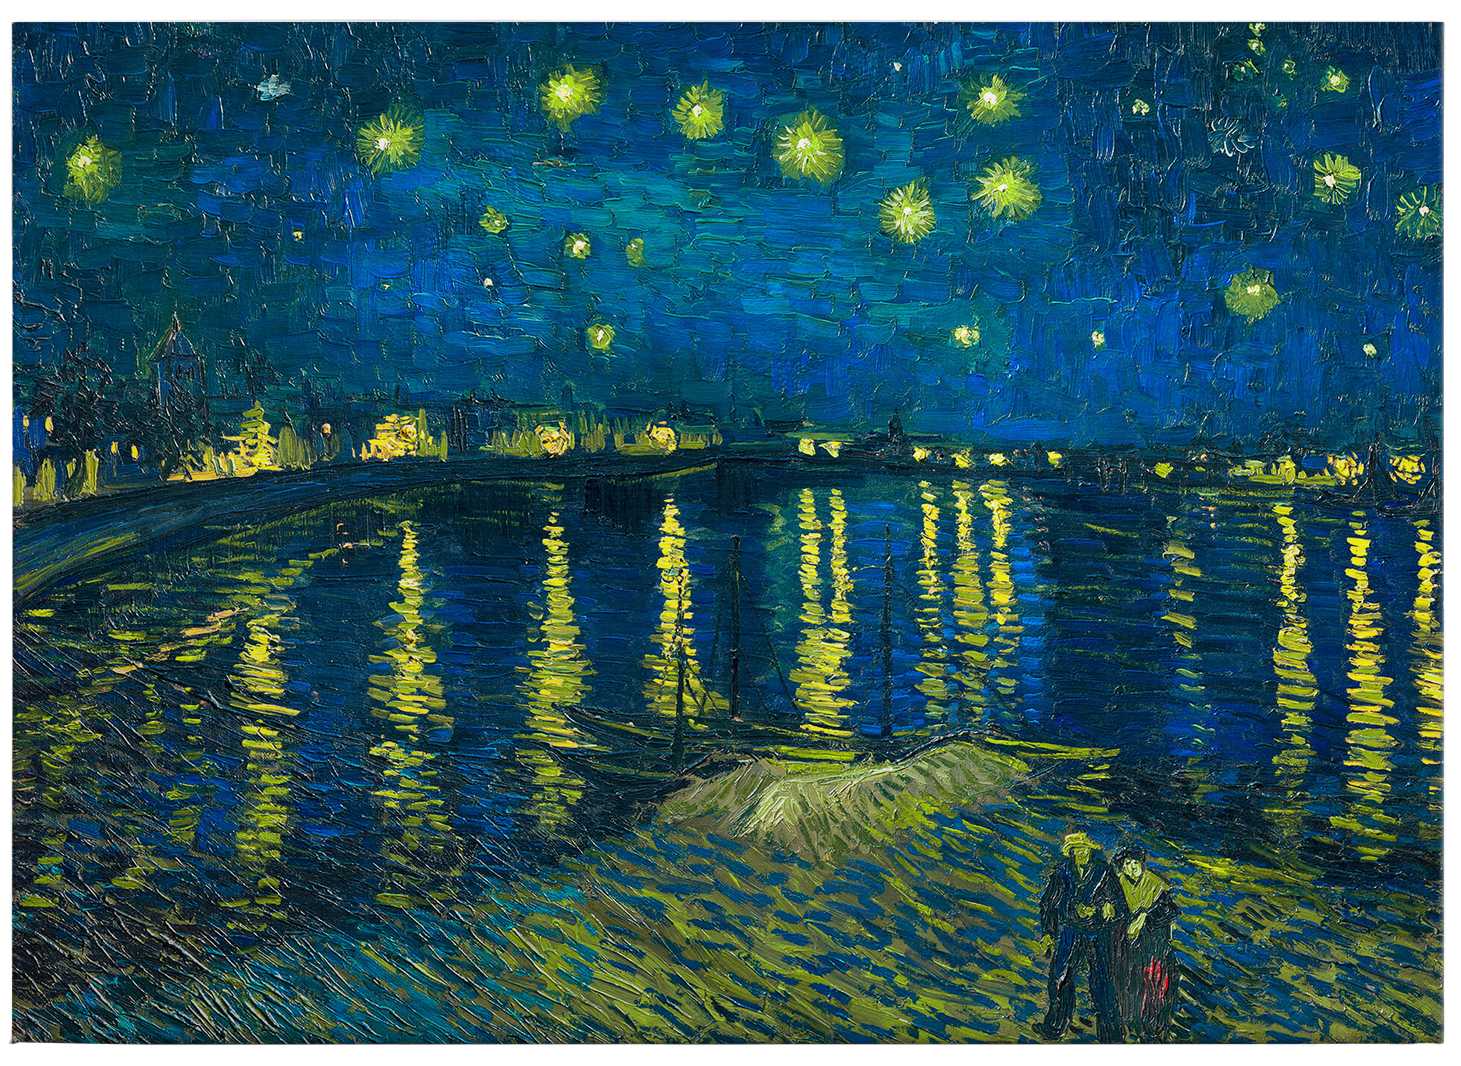             Cuadro en lienzo "Noche estrellada" de Van Gogh - 0,70 m x 0,50 m
        